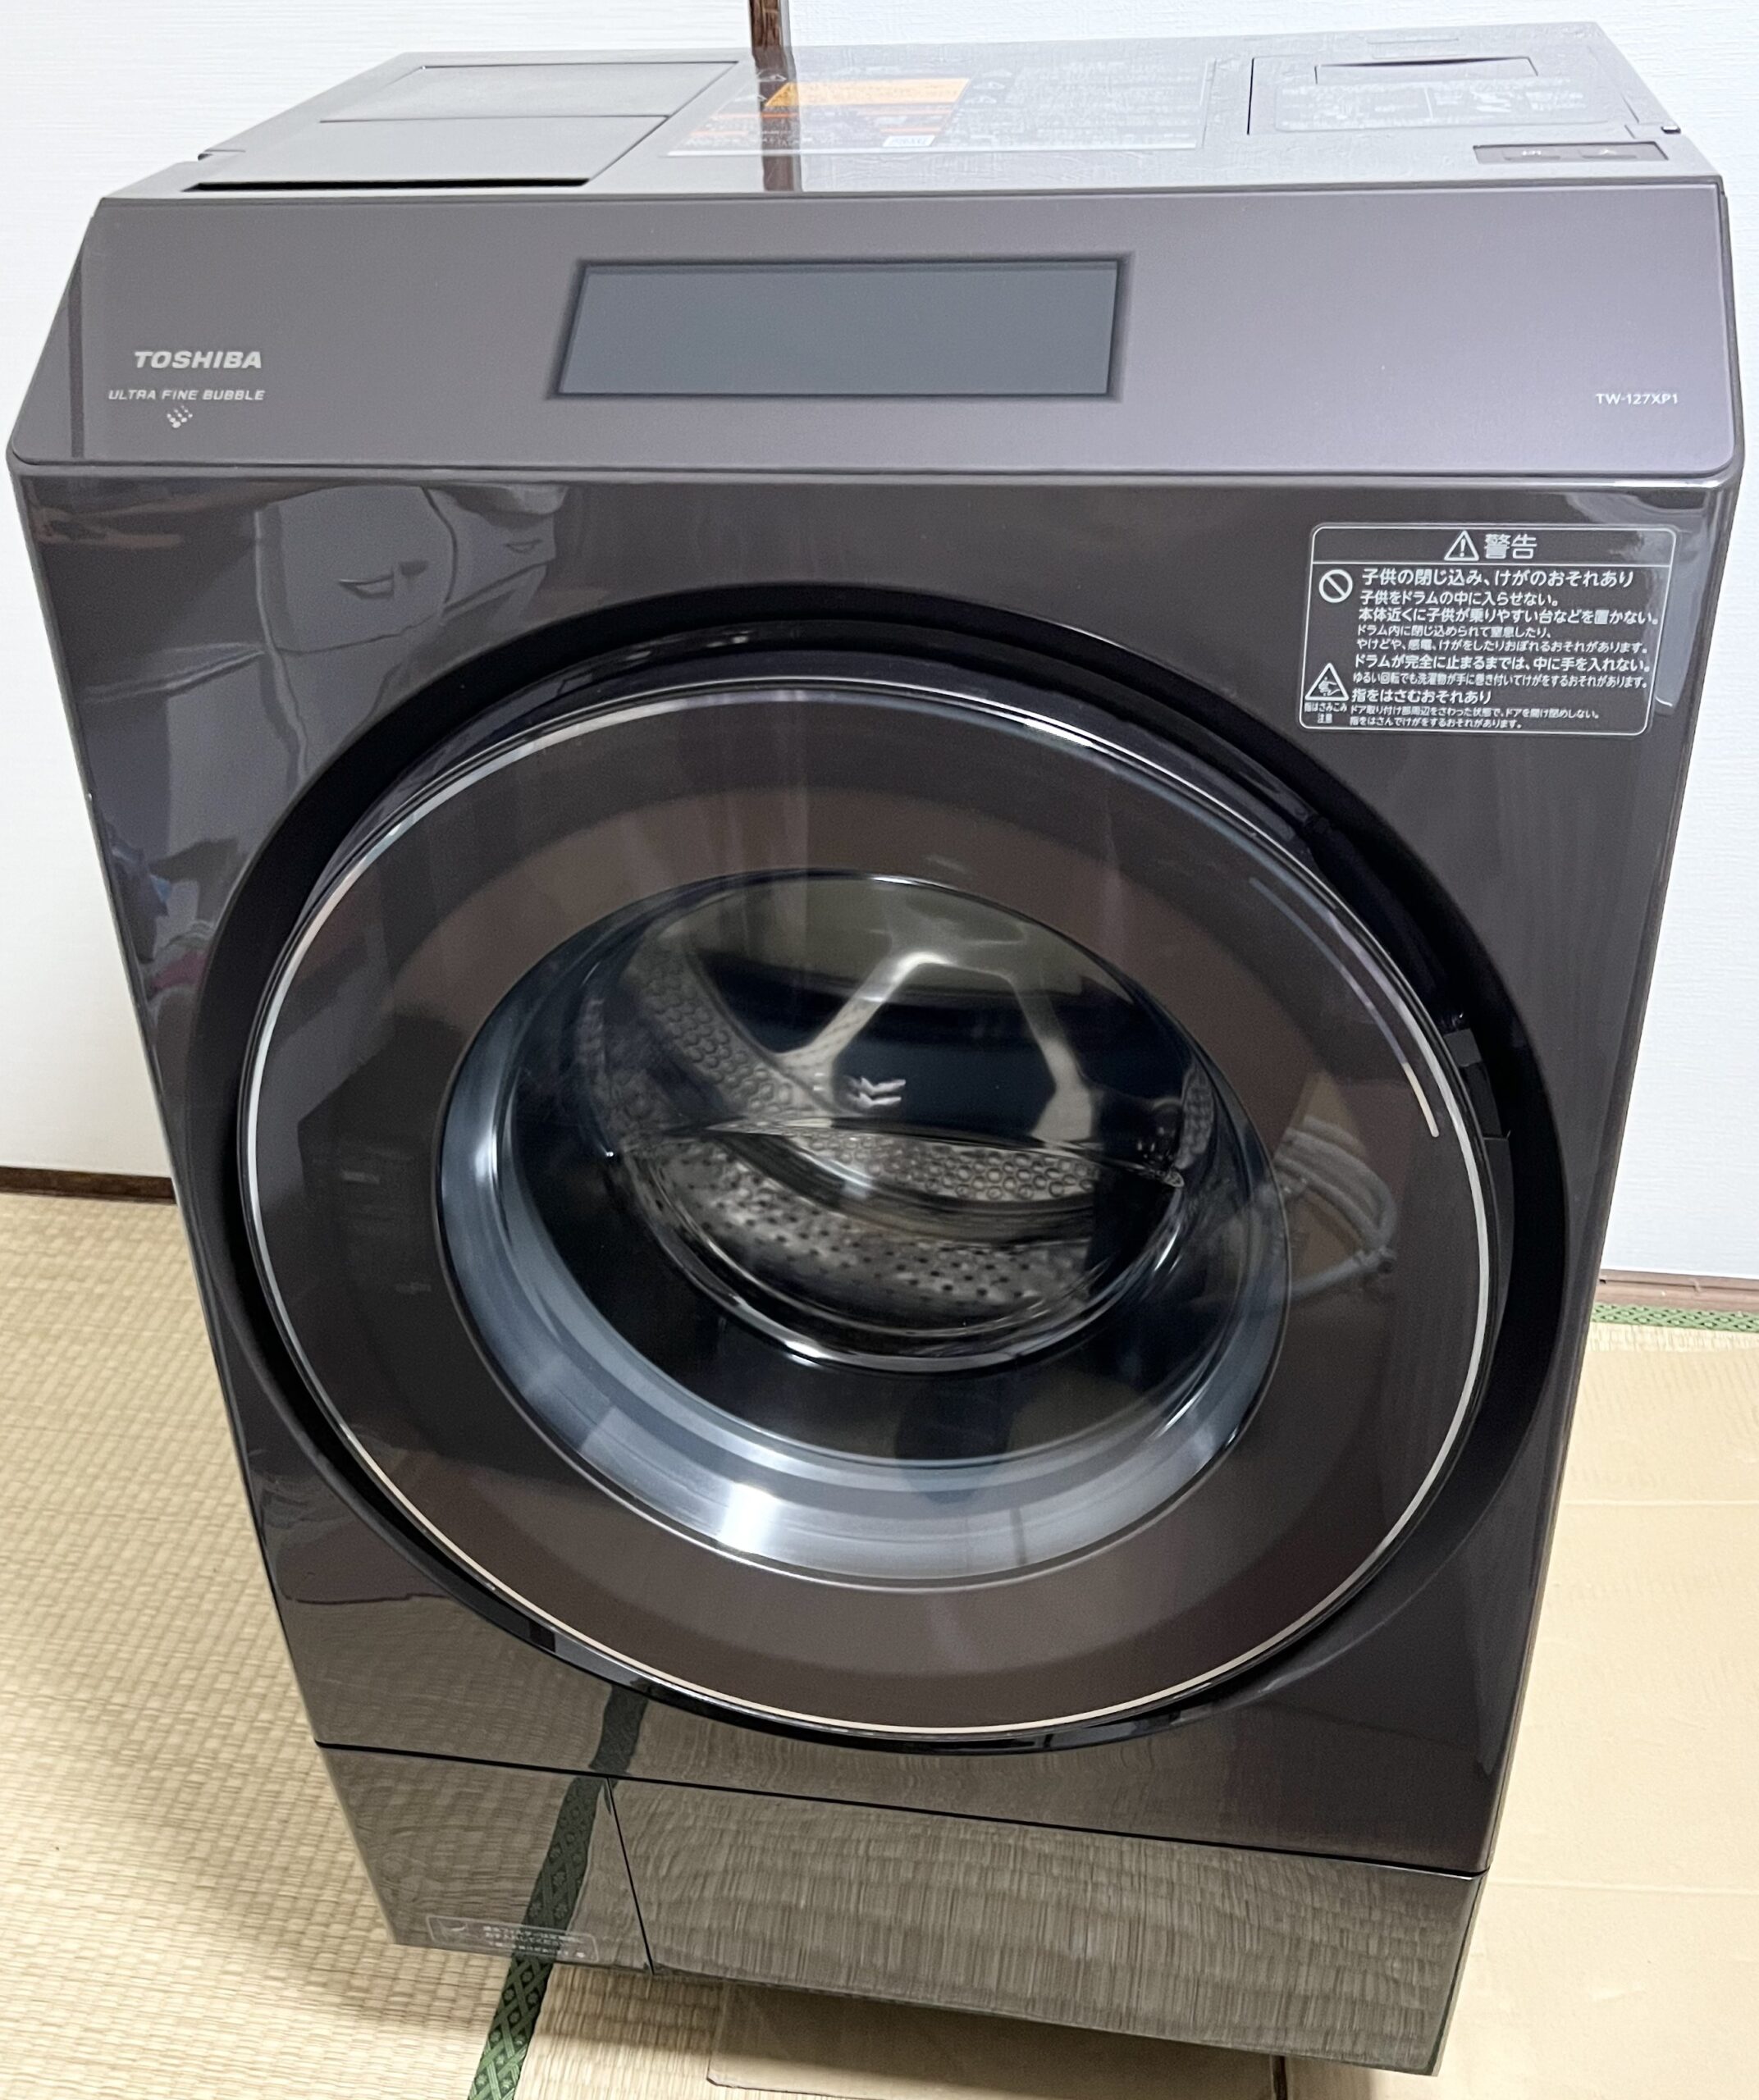 TOSHIBA ドラム式洗濯機 TW-127XP1L 2021年製を出張買取しました